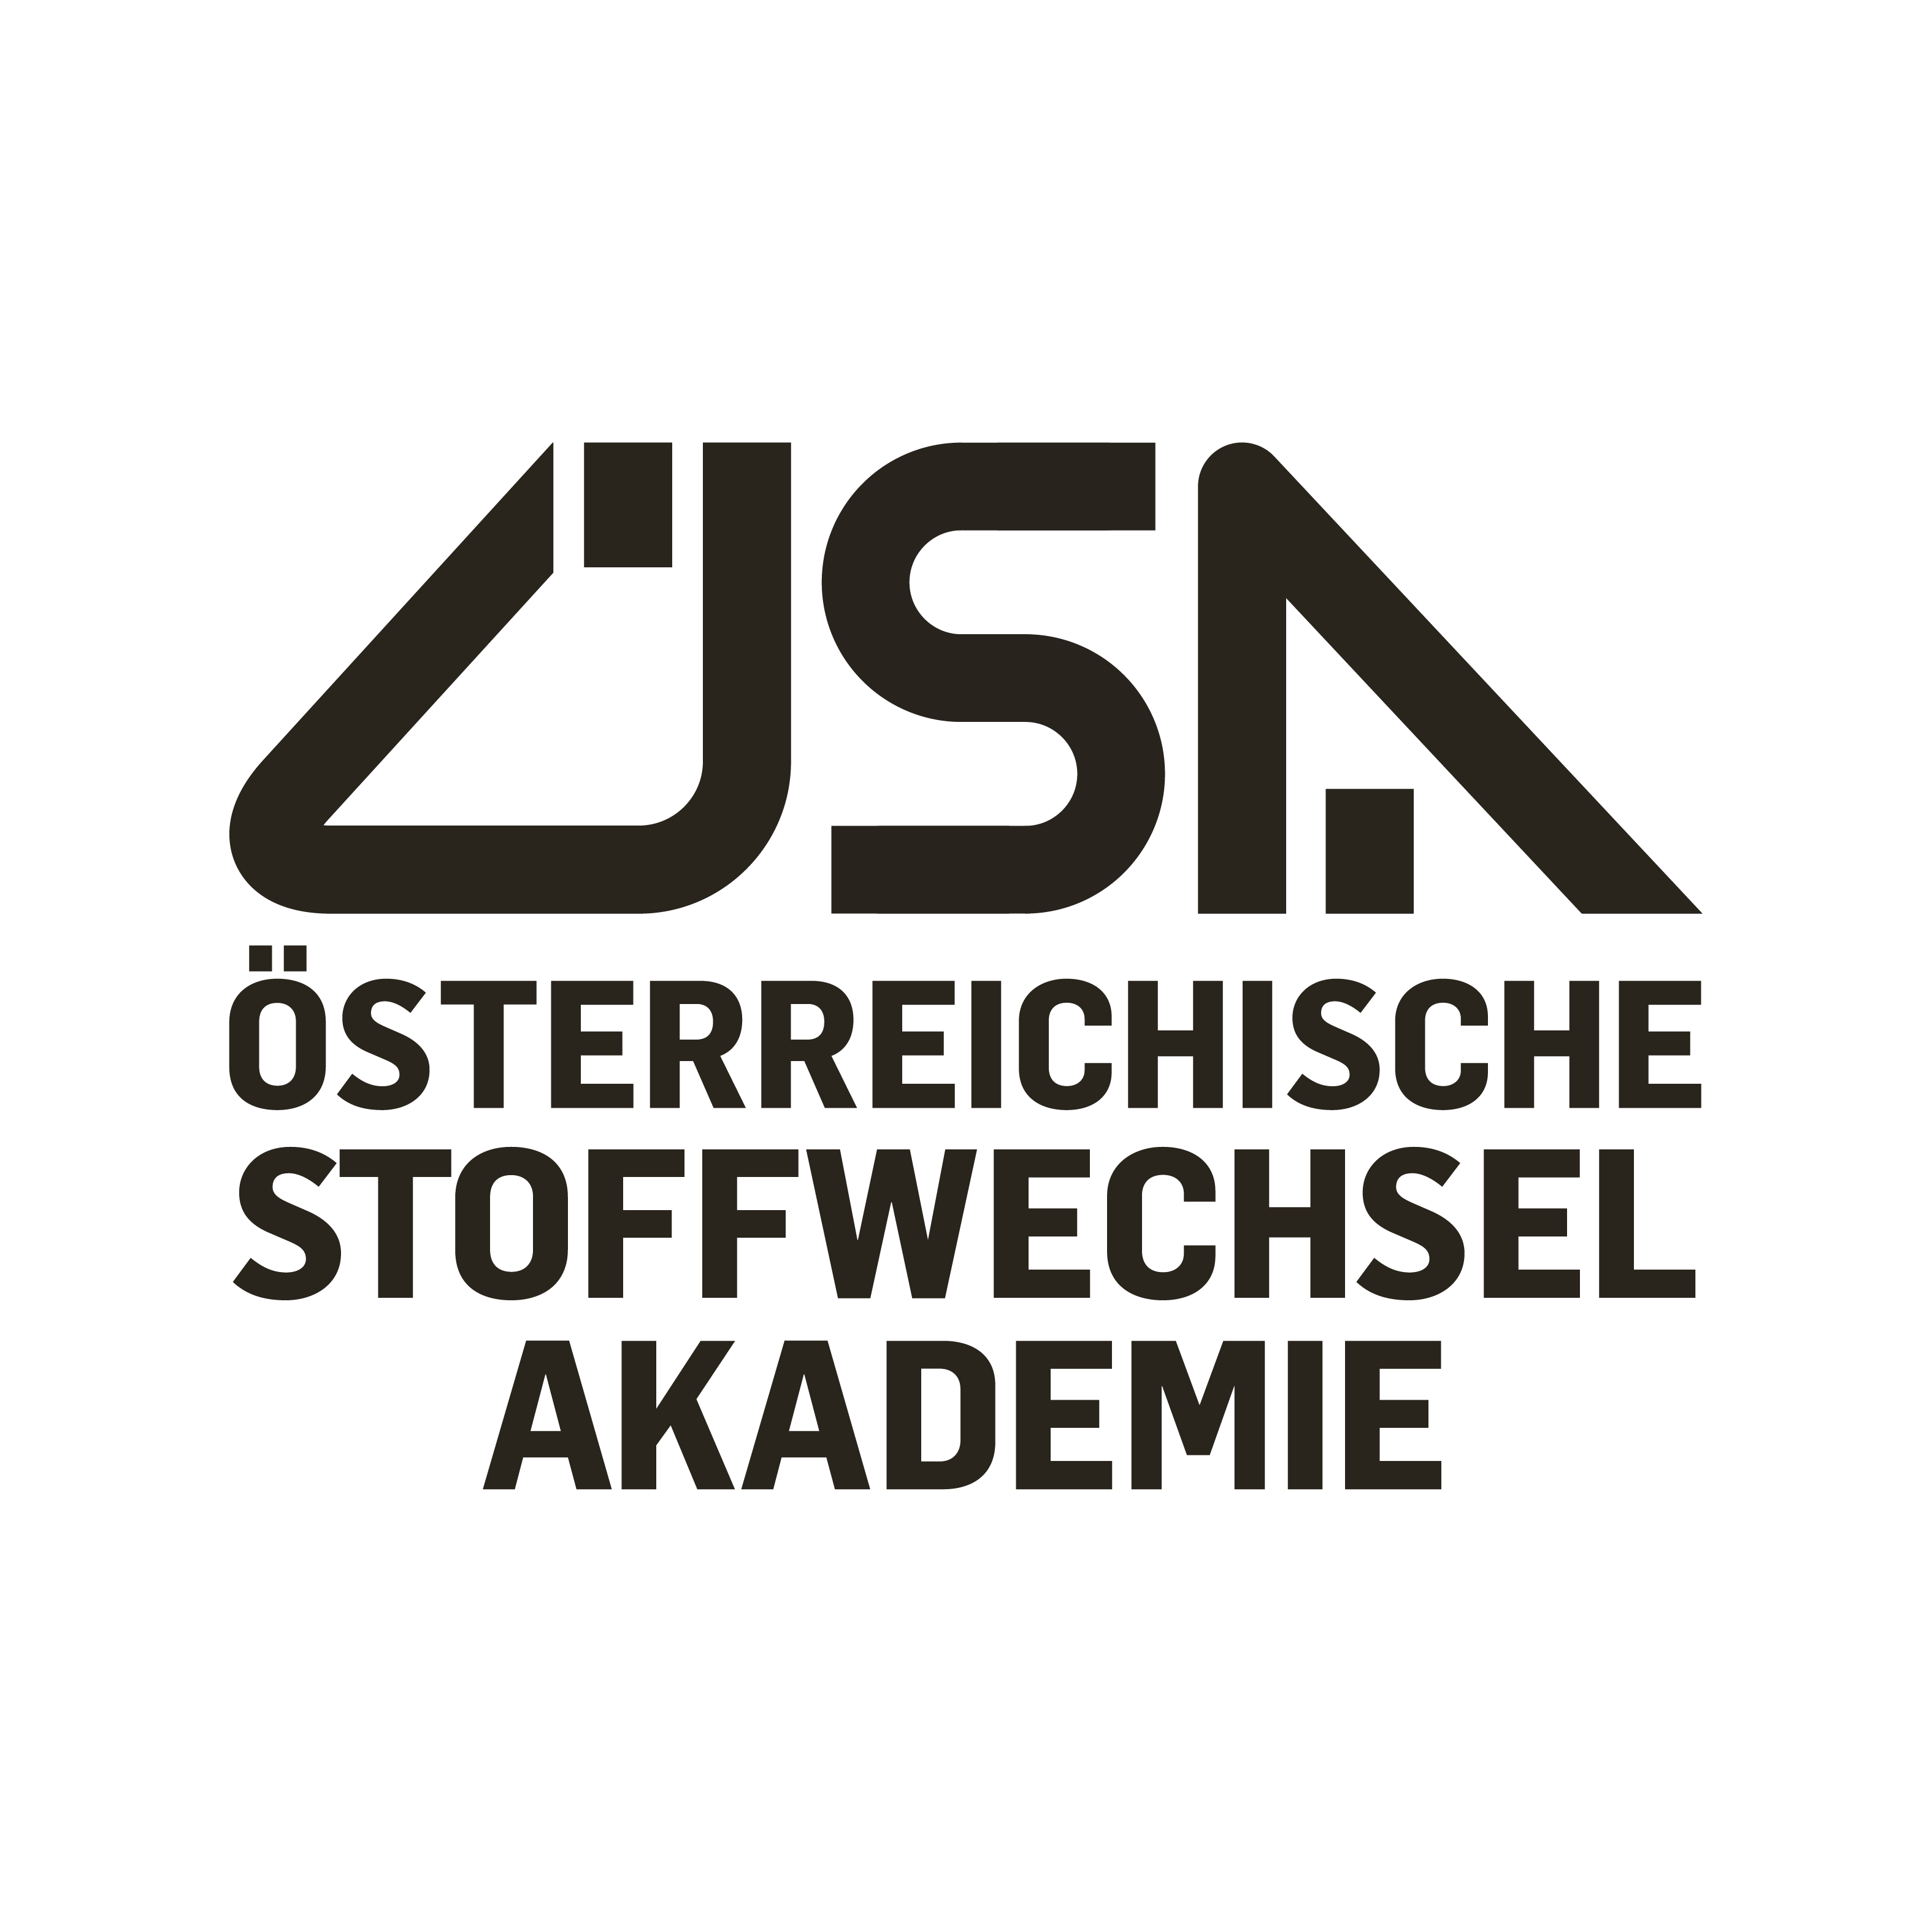 Österreichische Stoffwechselakademie